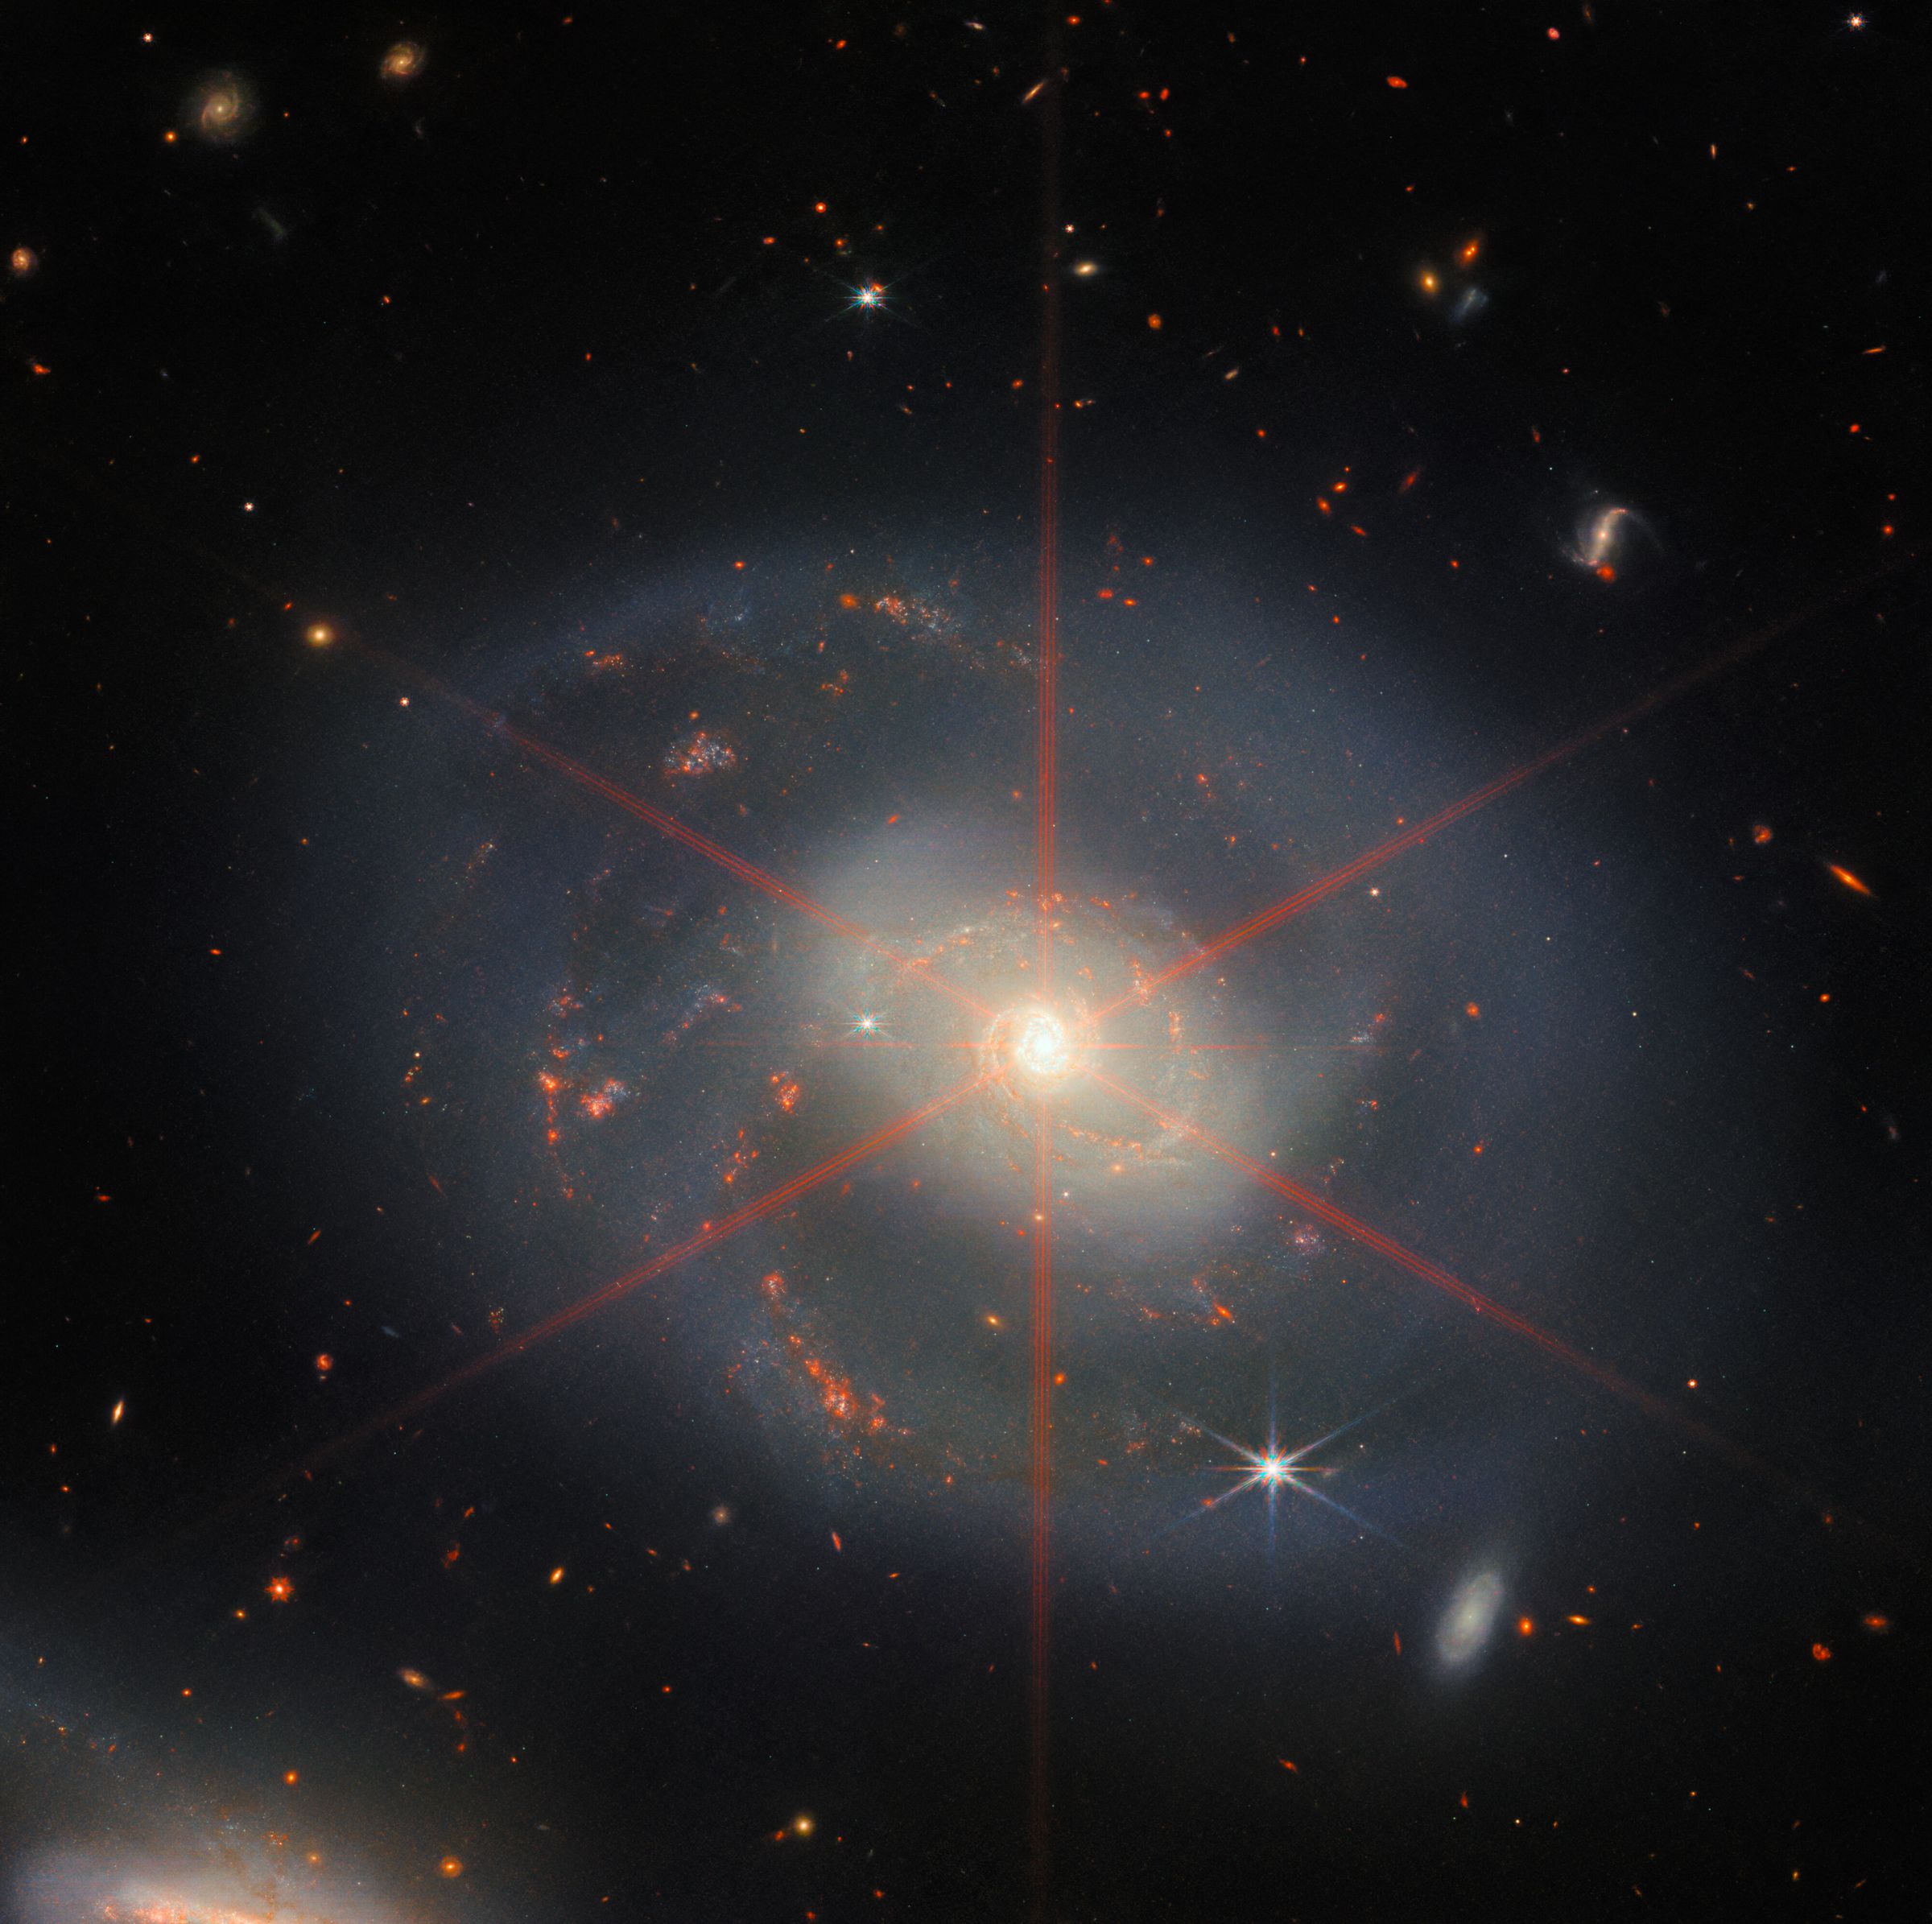 Deze afbeelding toont een spiraalstelsel dat wordt gedomineerd door een helder centraal gebied.  Het sterrenstelsel heeft blauwpaarse tinten met oranjerode gebieden gevuld met sterren.  Er is ook een grote diffractiepiek te zien, die verschijnt als een stellair patroon boven het centrale deel van de melkweg.  Veel sterren en sterrenstelsels vullen het achtergrondlandschap